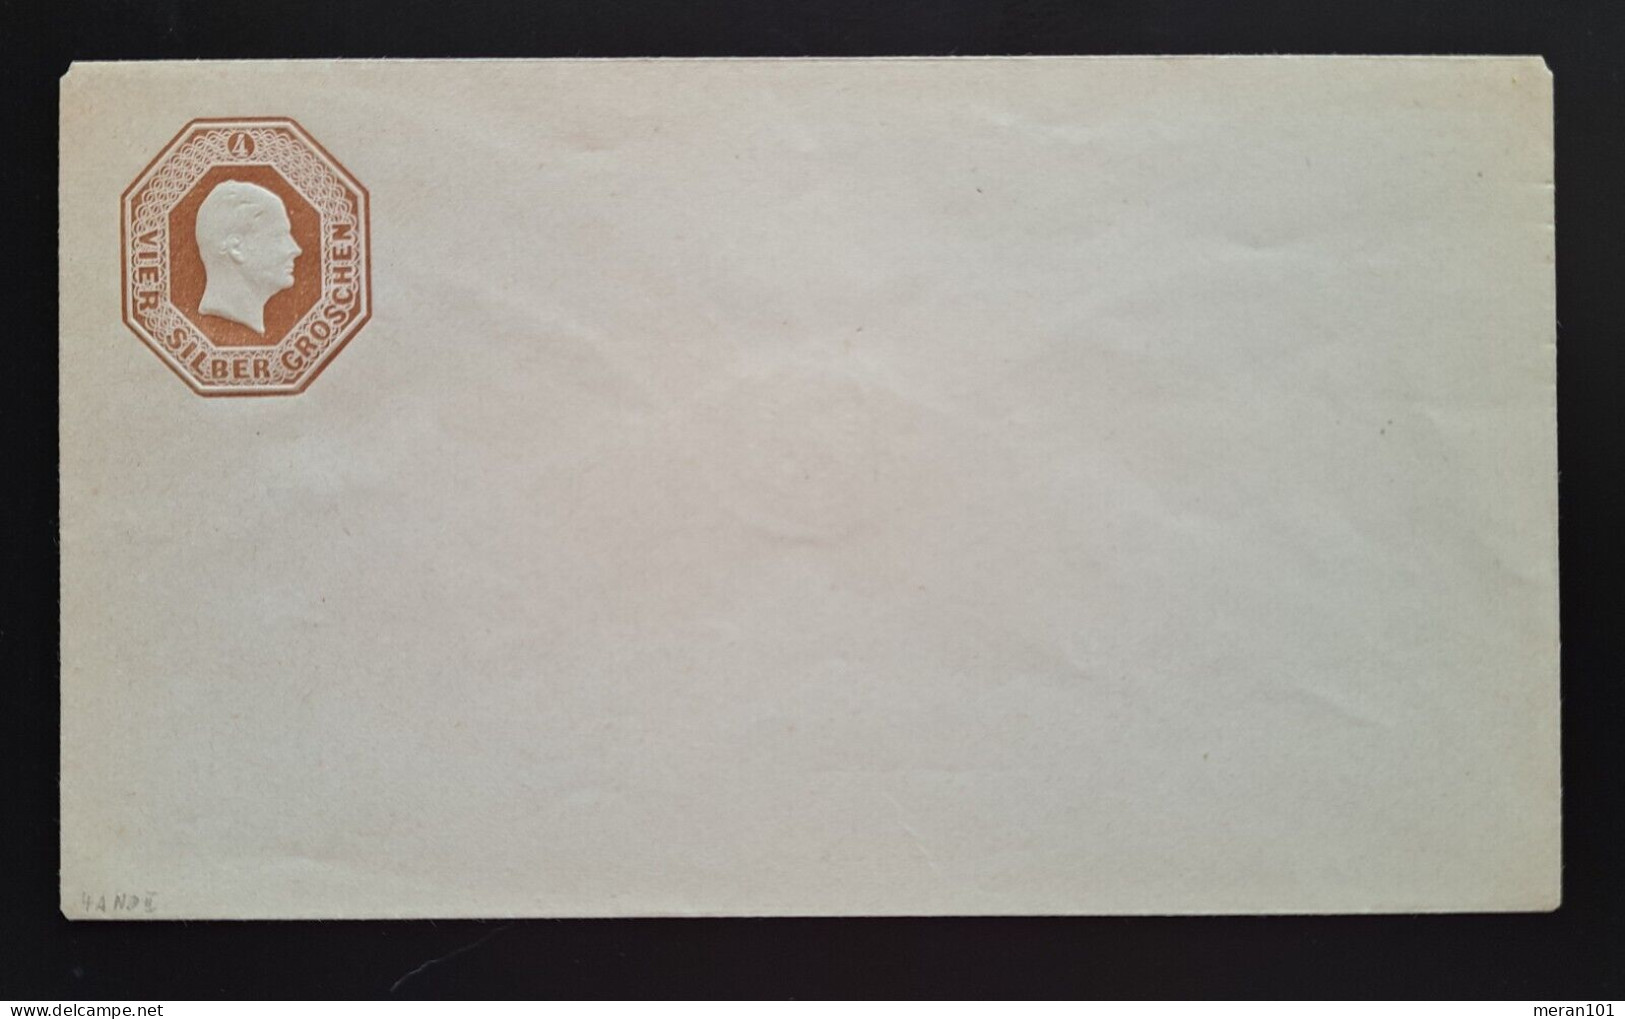 Preußen Umschlag U 4A Type II Neudruck - Entiers Postaux